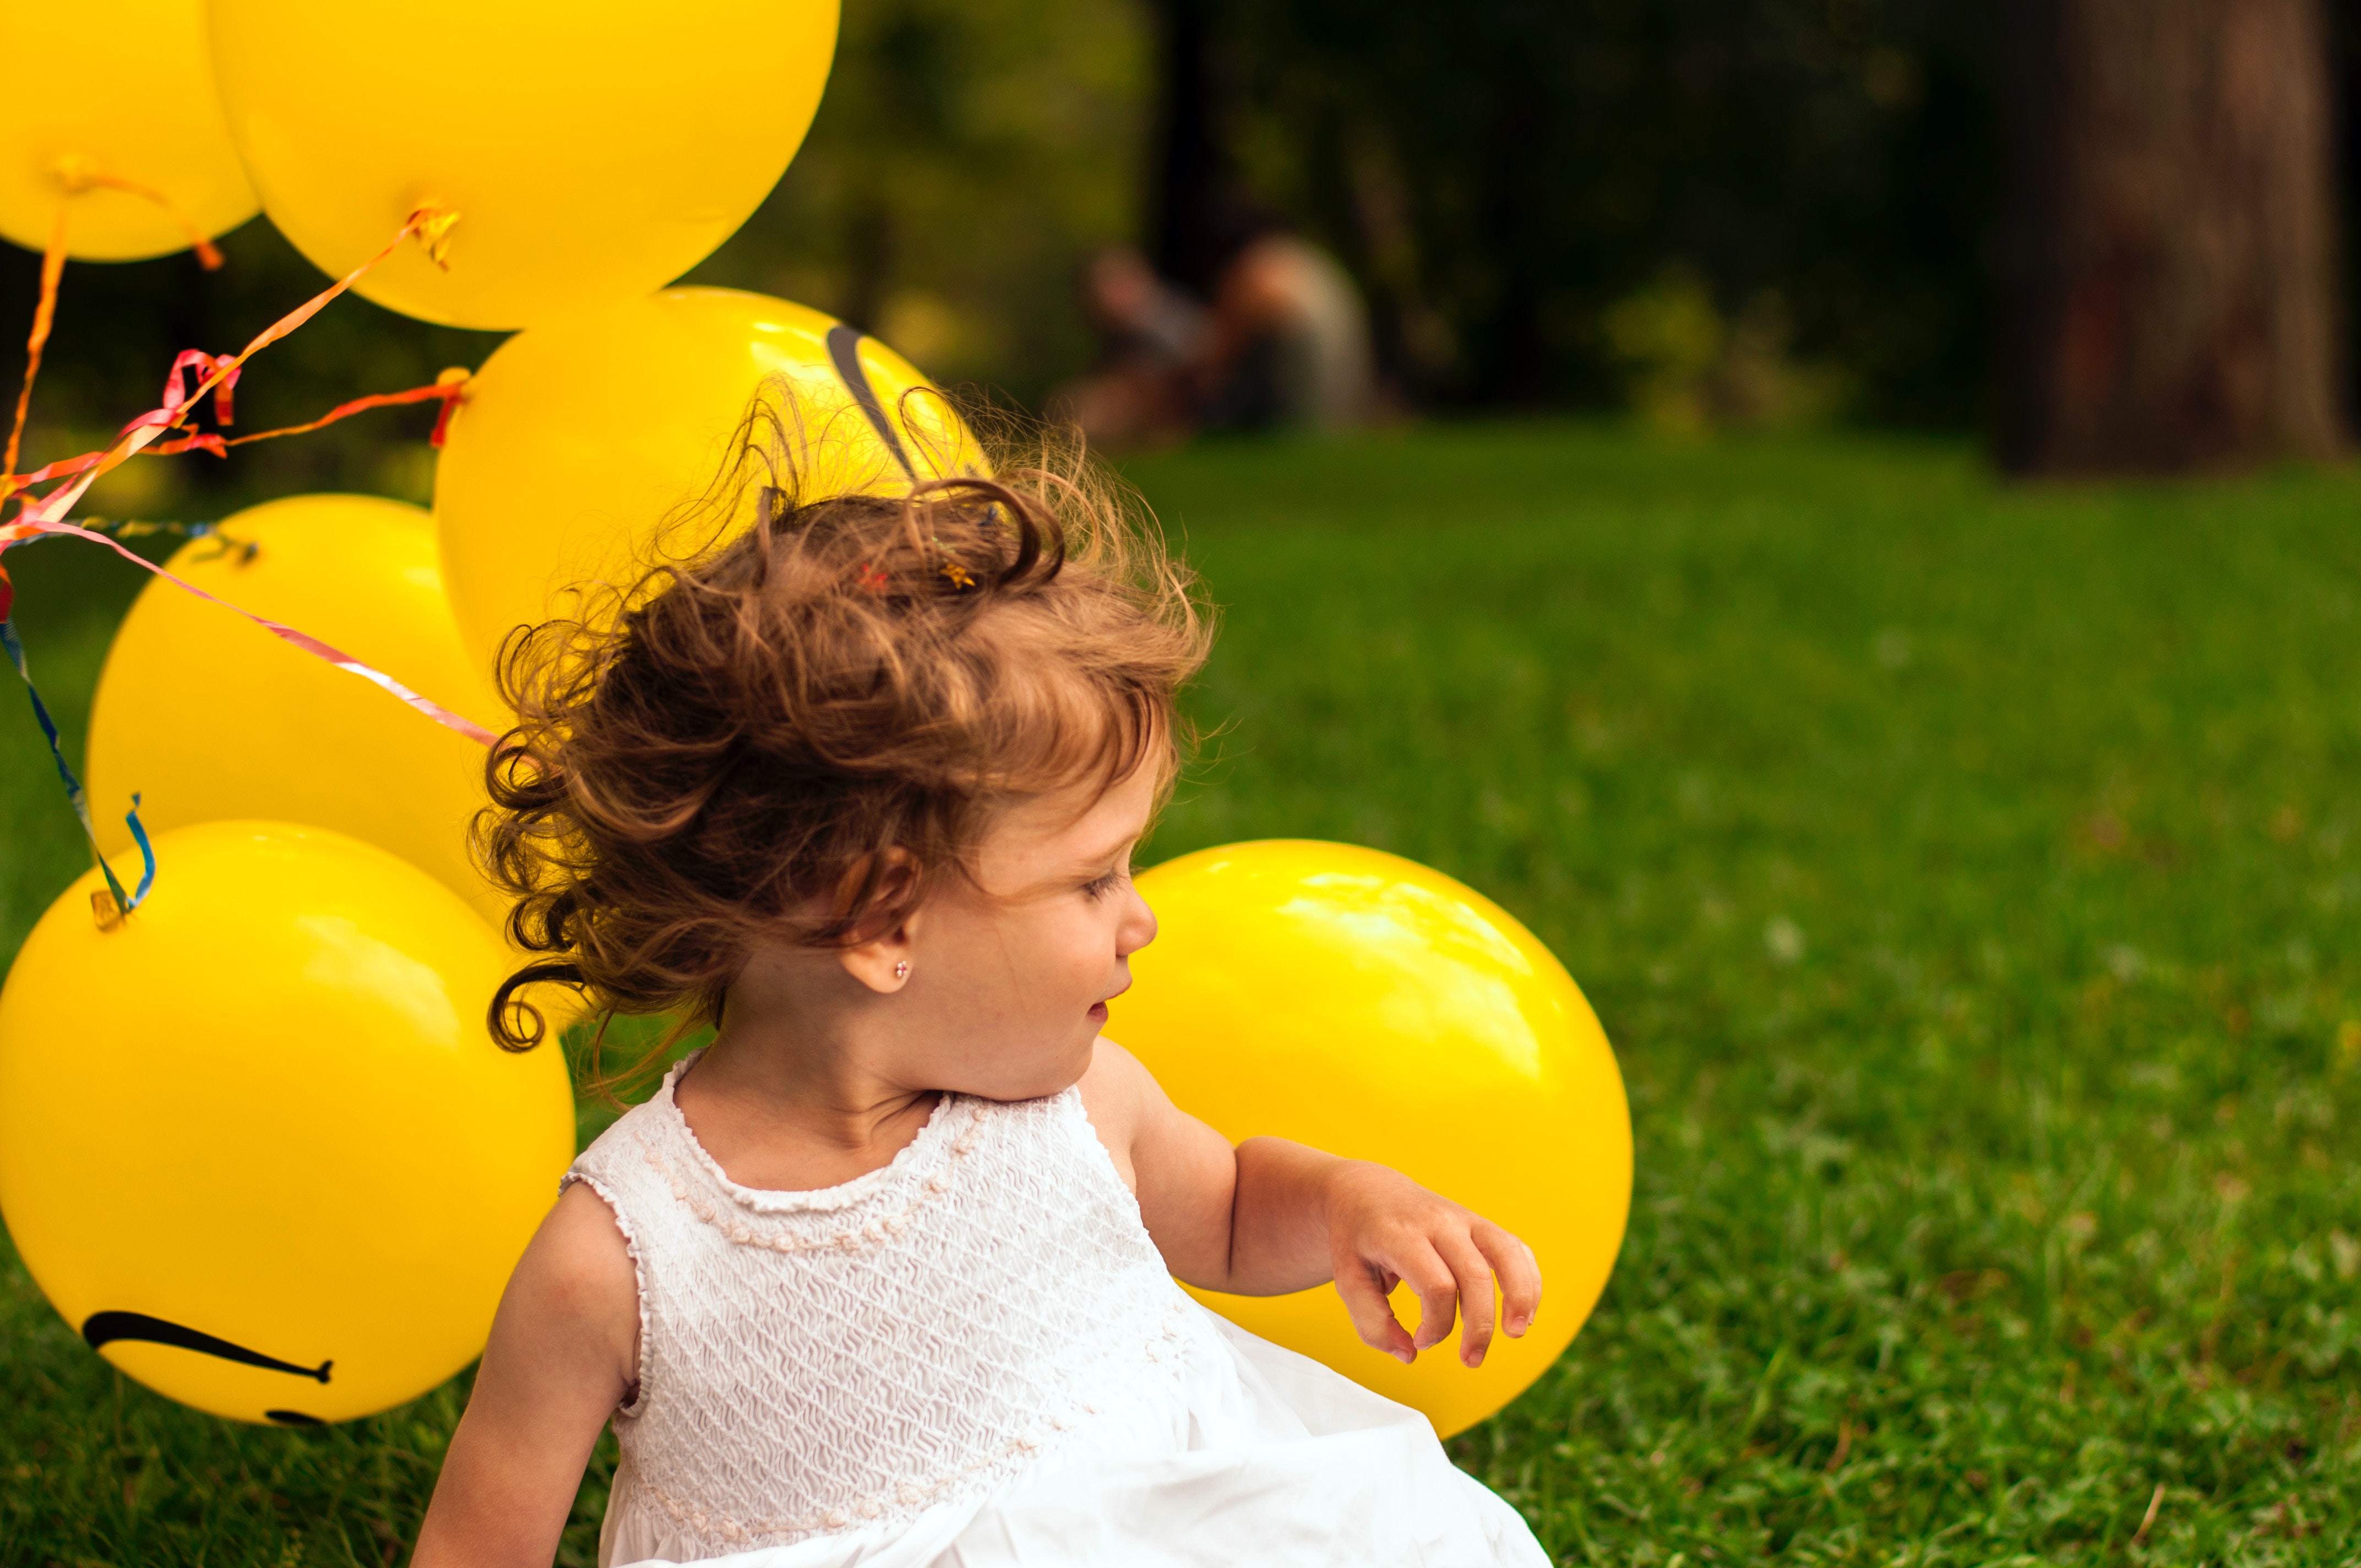 Petite fille en train de jouer dans l'herbe avec des ballons jaunes